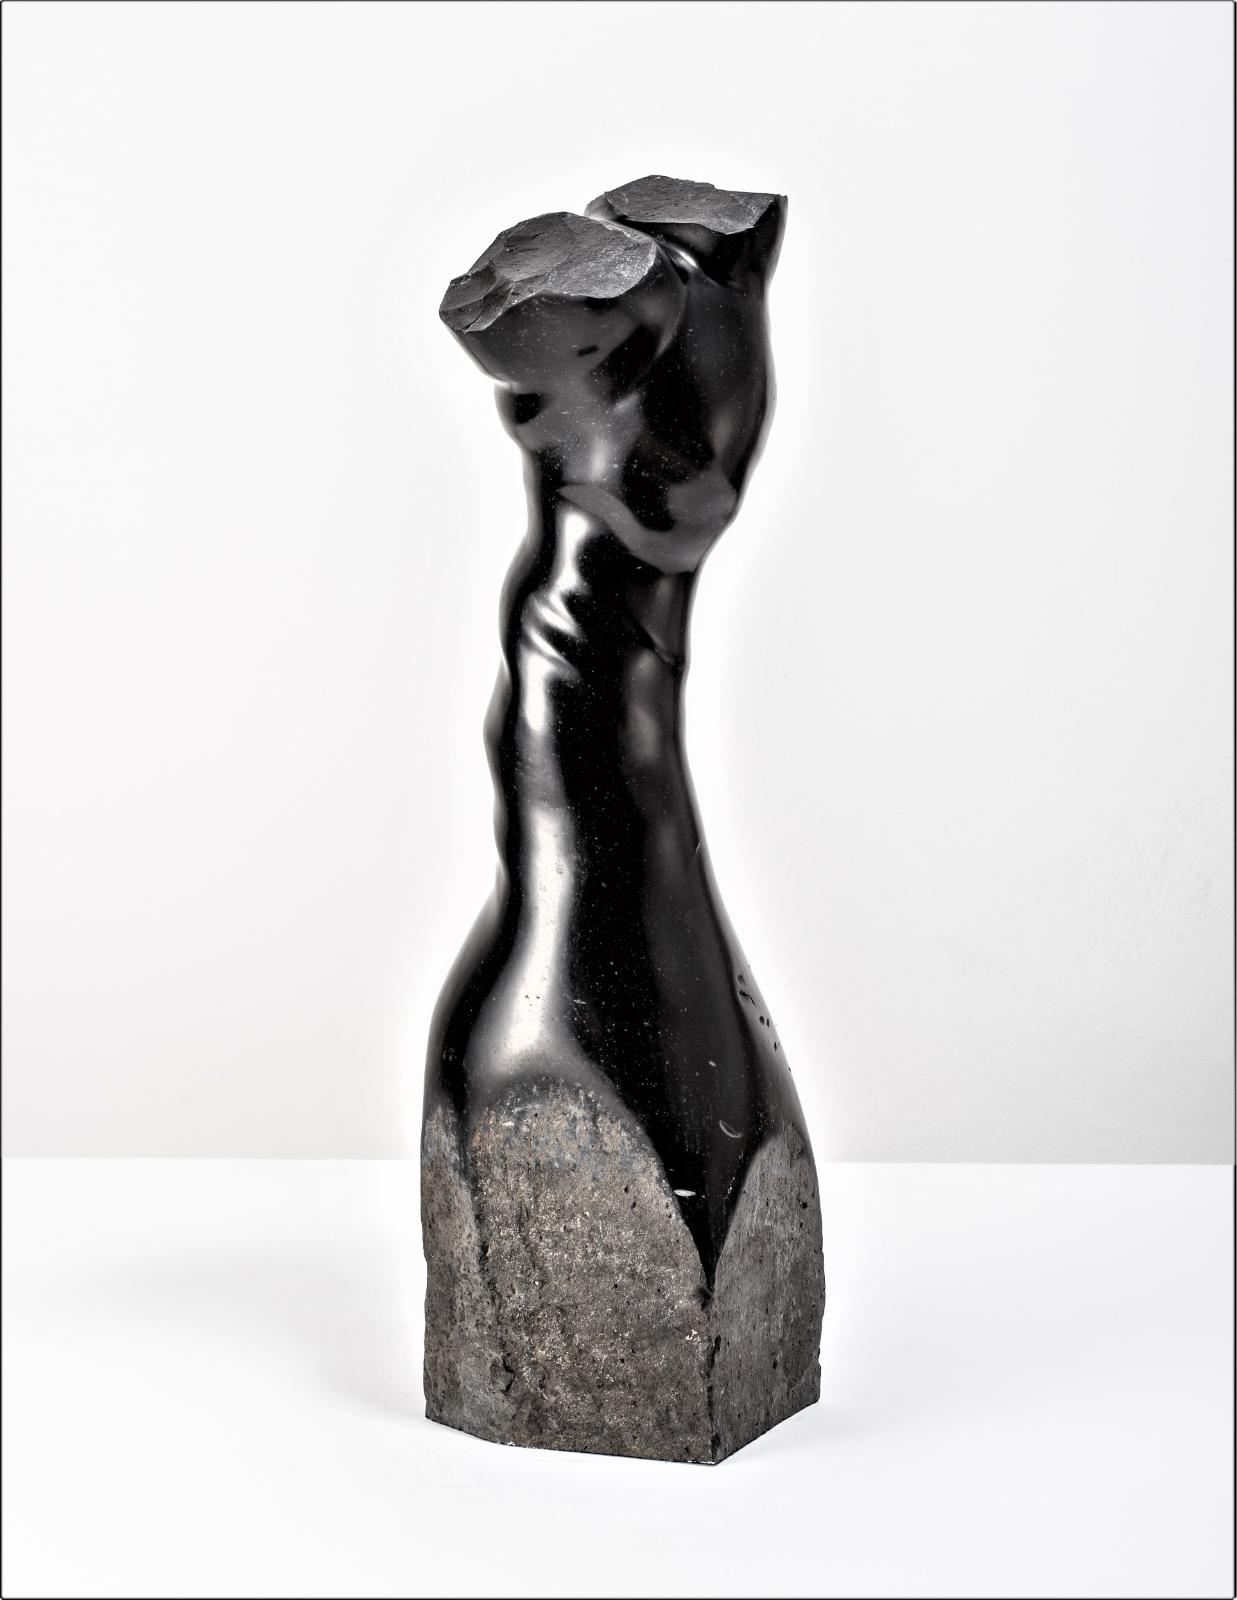 Christoph Traub, Körper, bewegt, Ansicht 2, 2018, Basalt 55 x 15 x 18 cm, Preis auf Anfrage, trc005kü